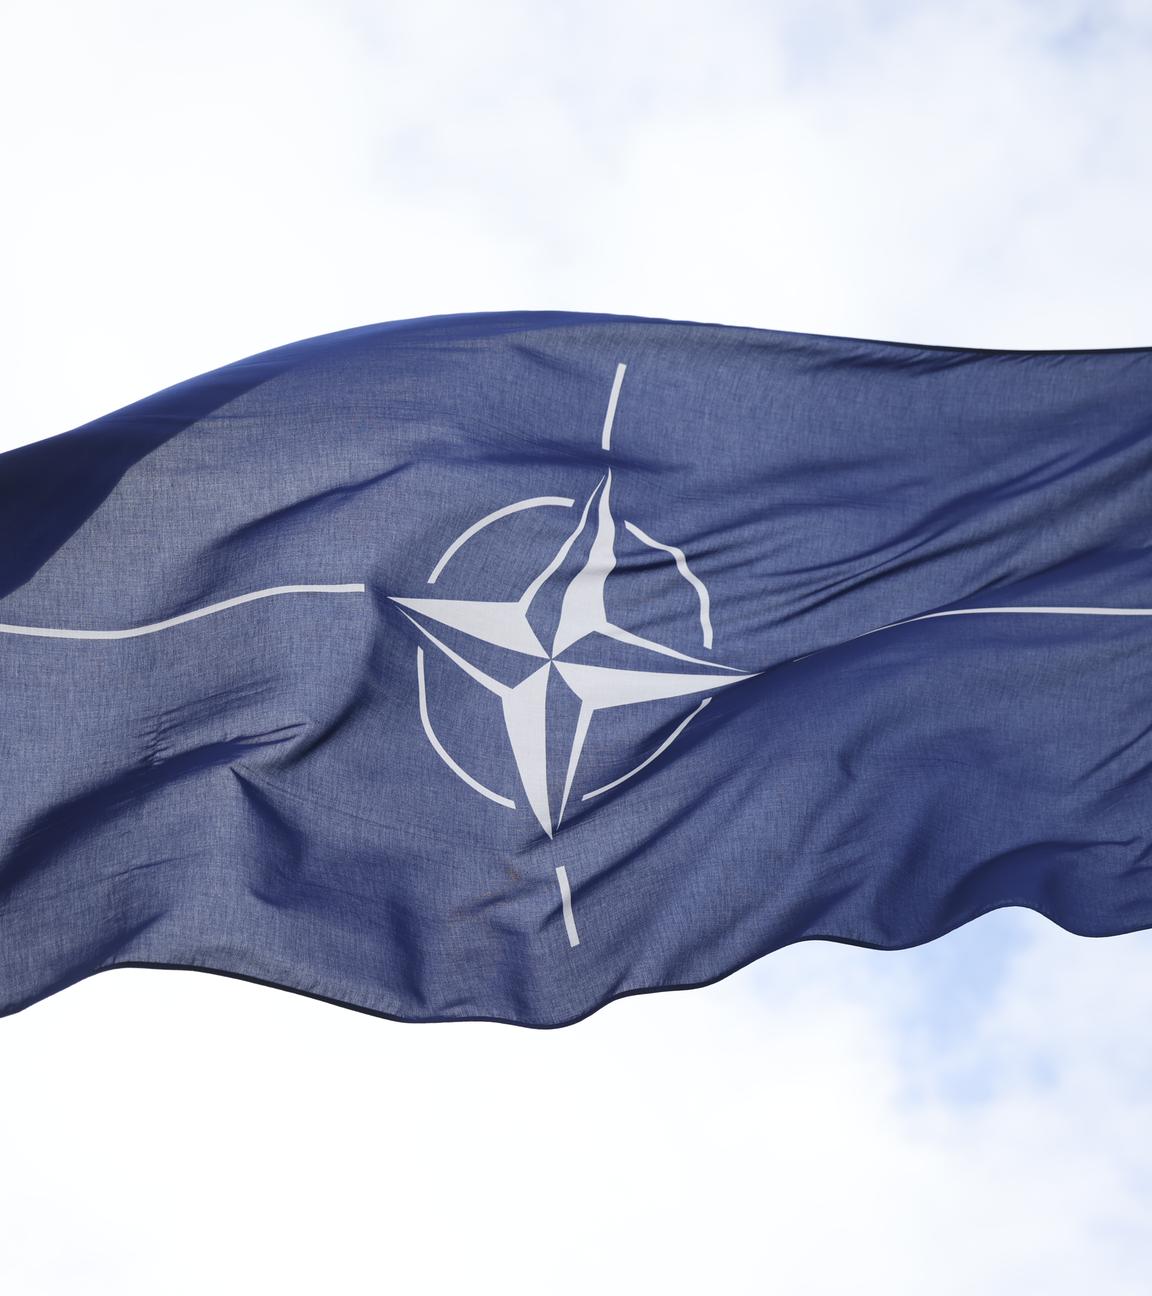 04.04.24, Berlin: Eine Flagge mit dem Symbol der NATO weht in der Luft.